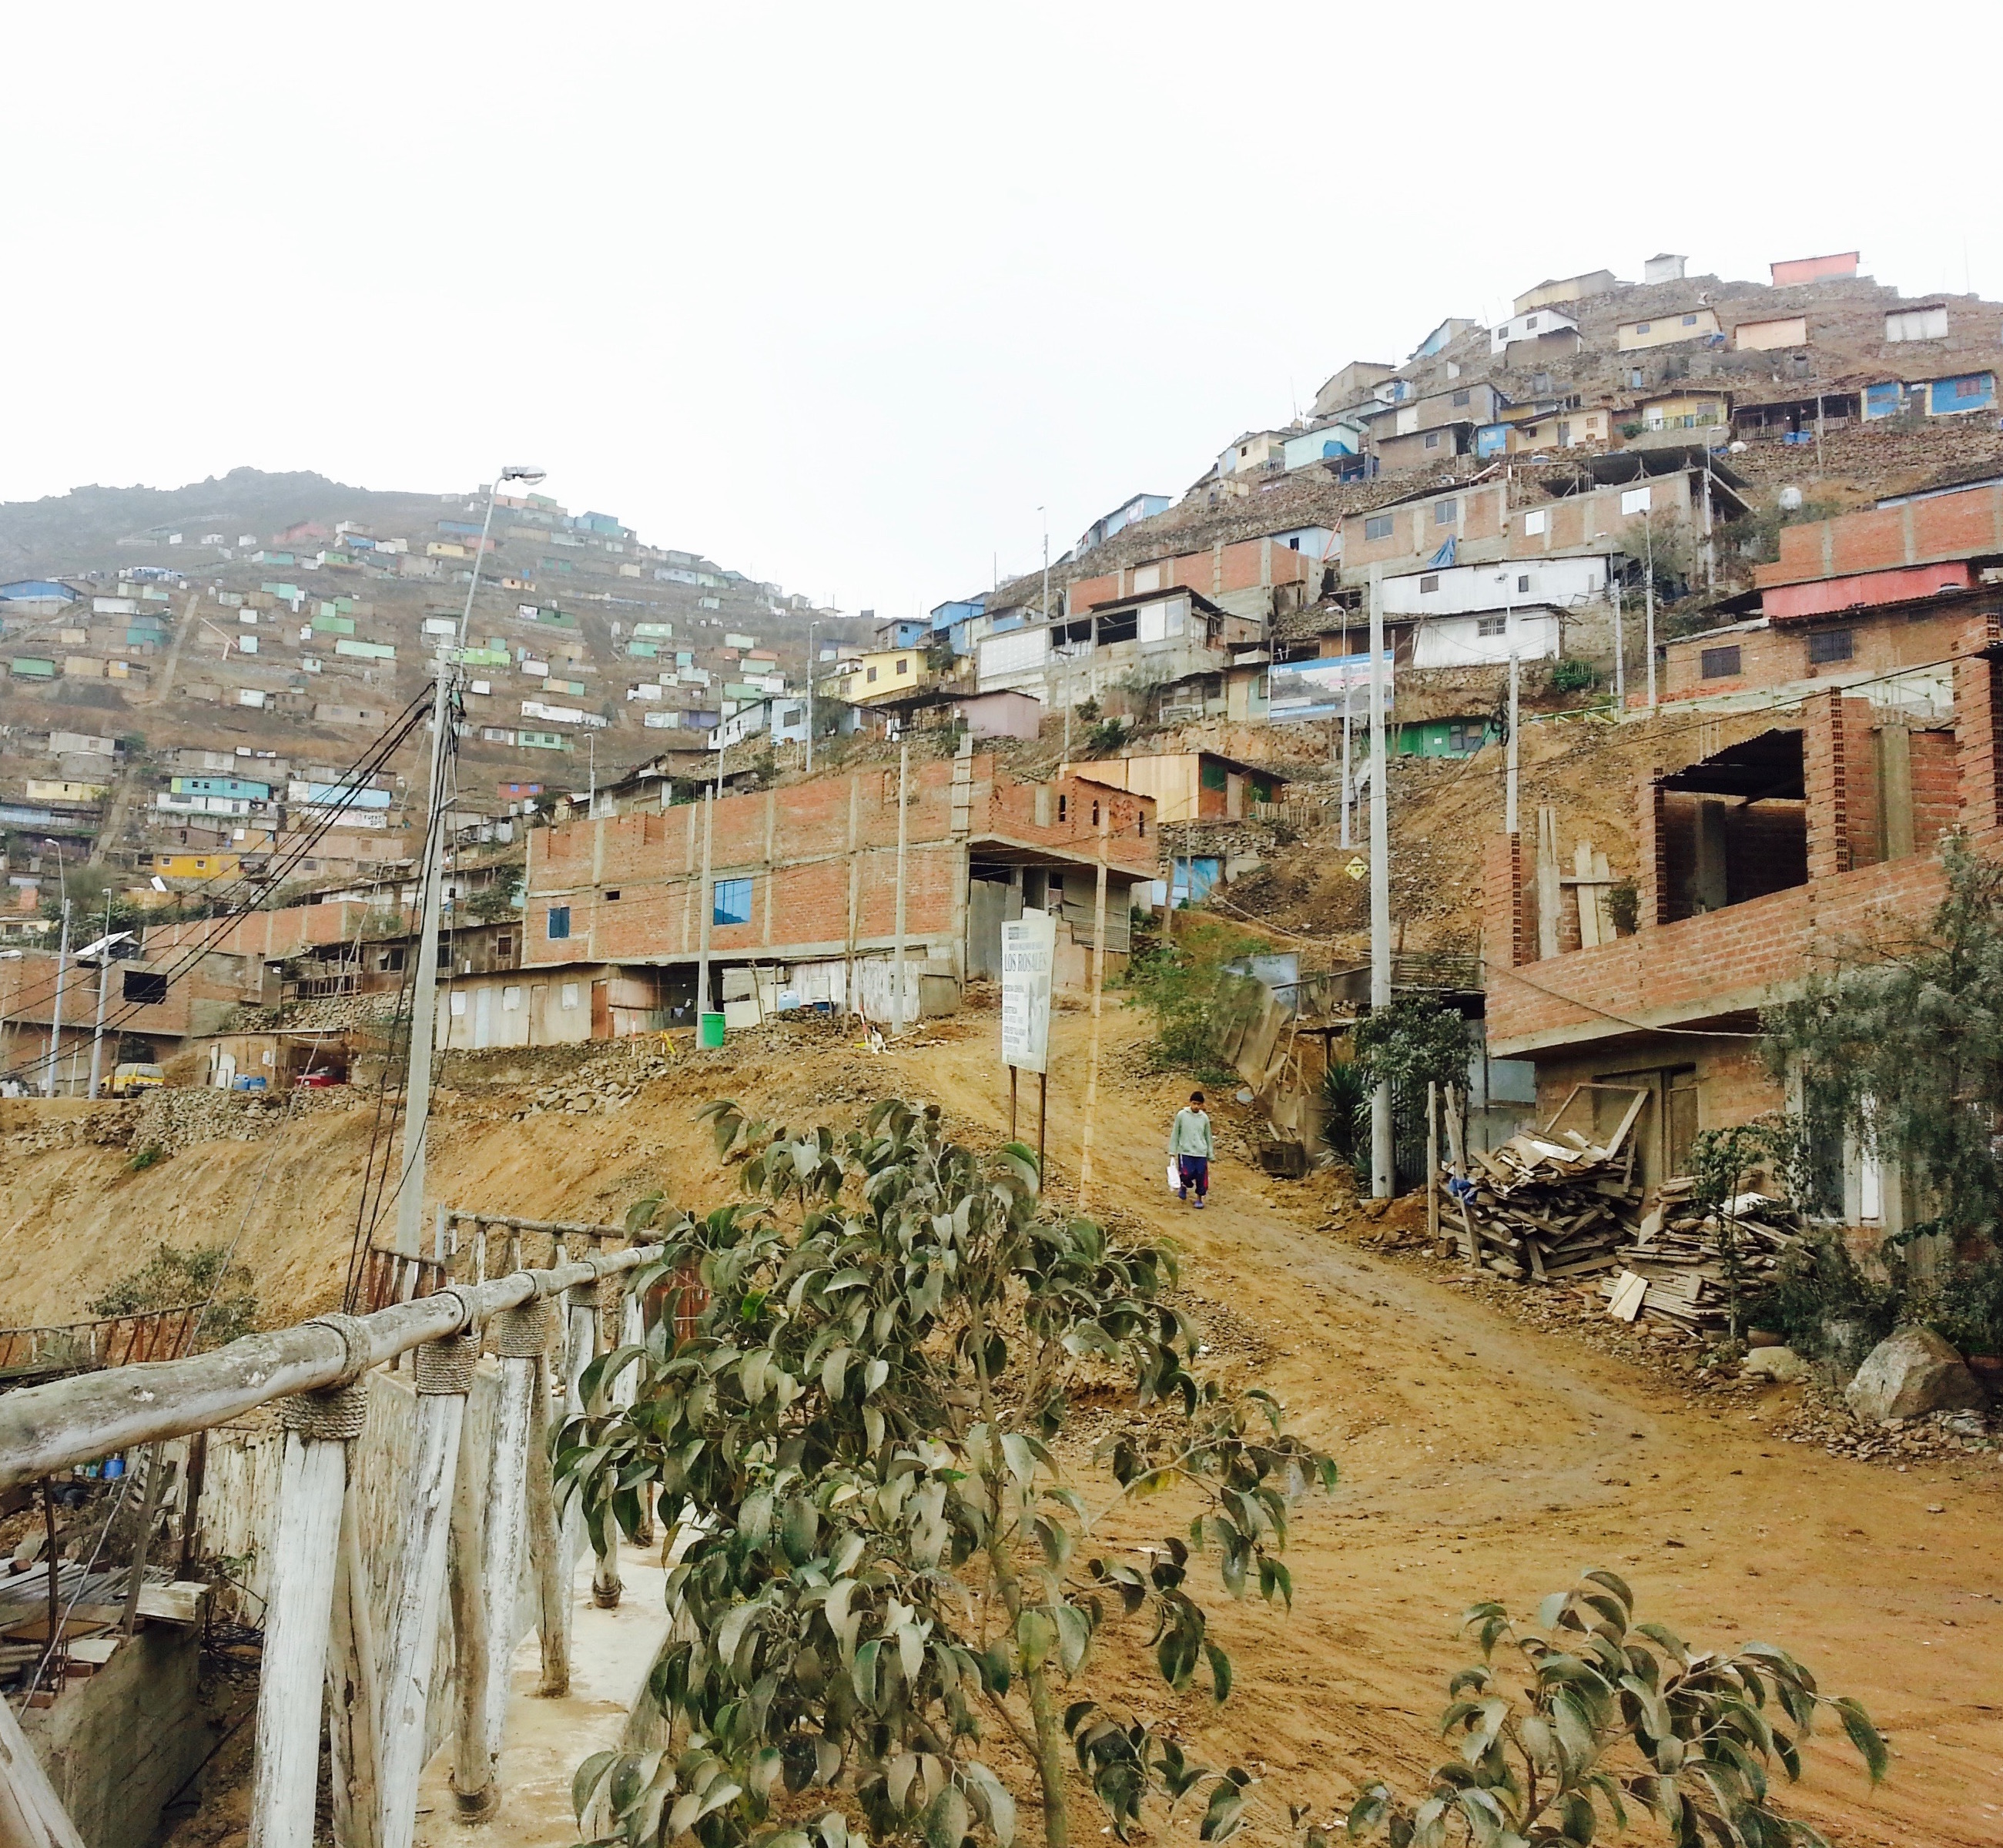 Neighborhood in Lima